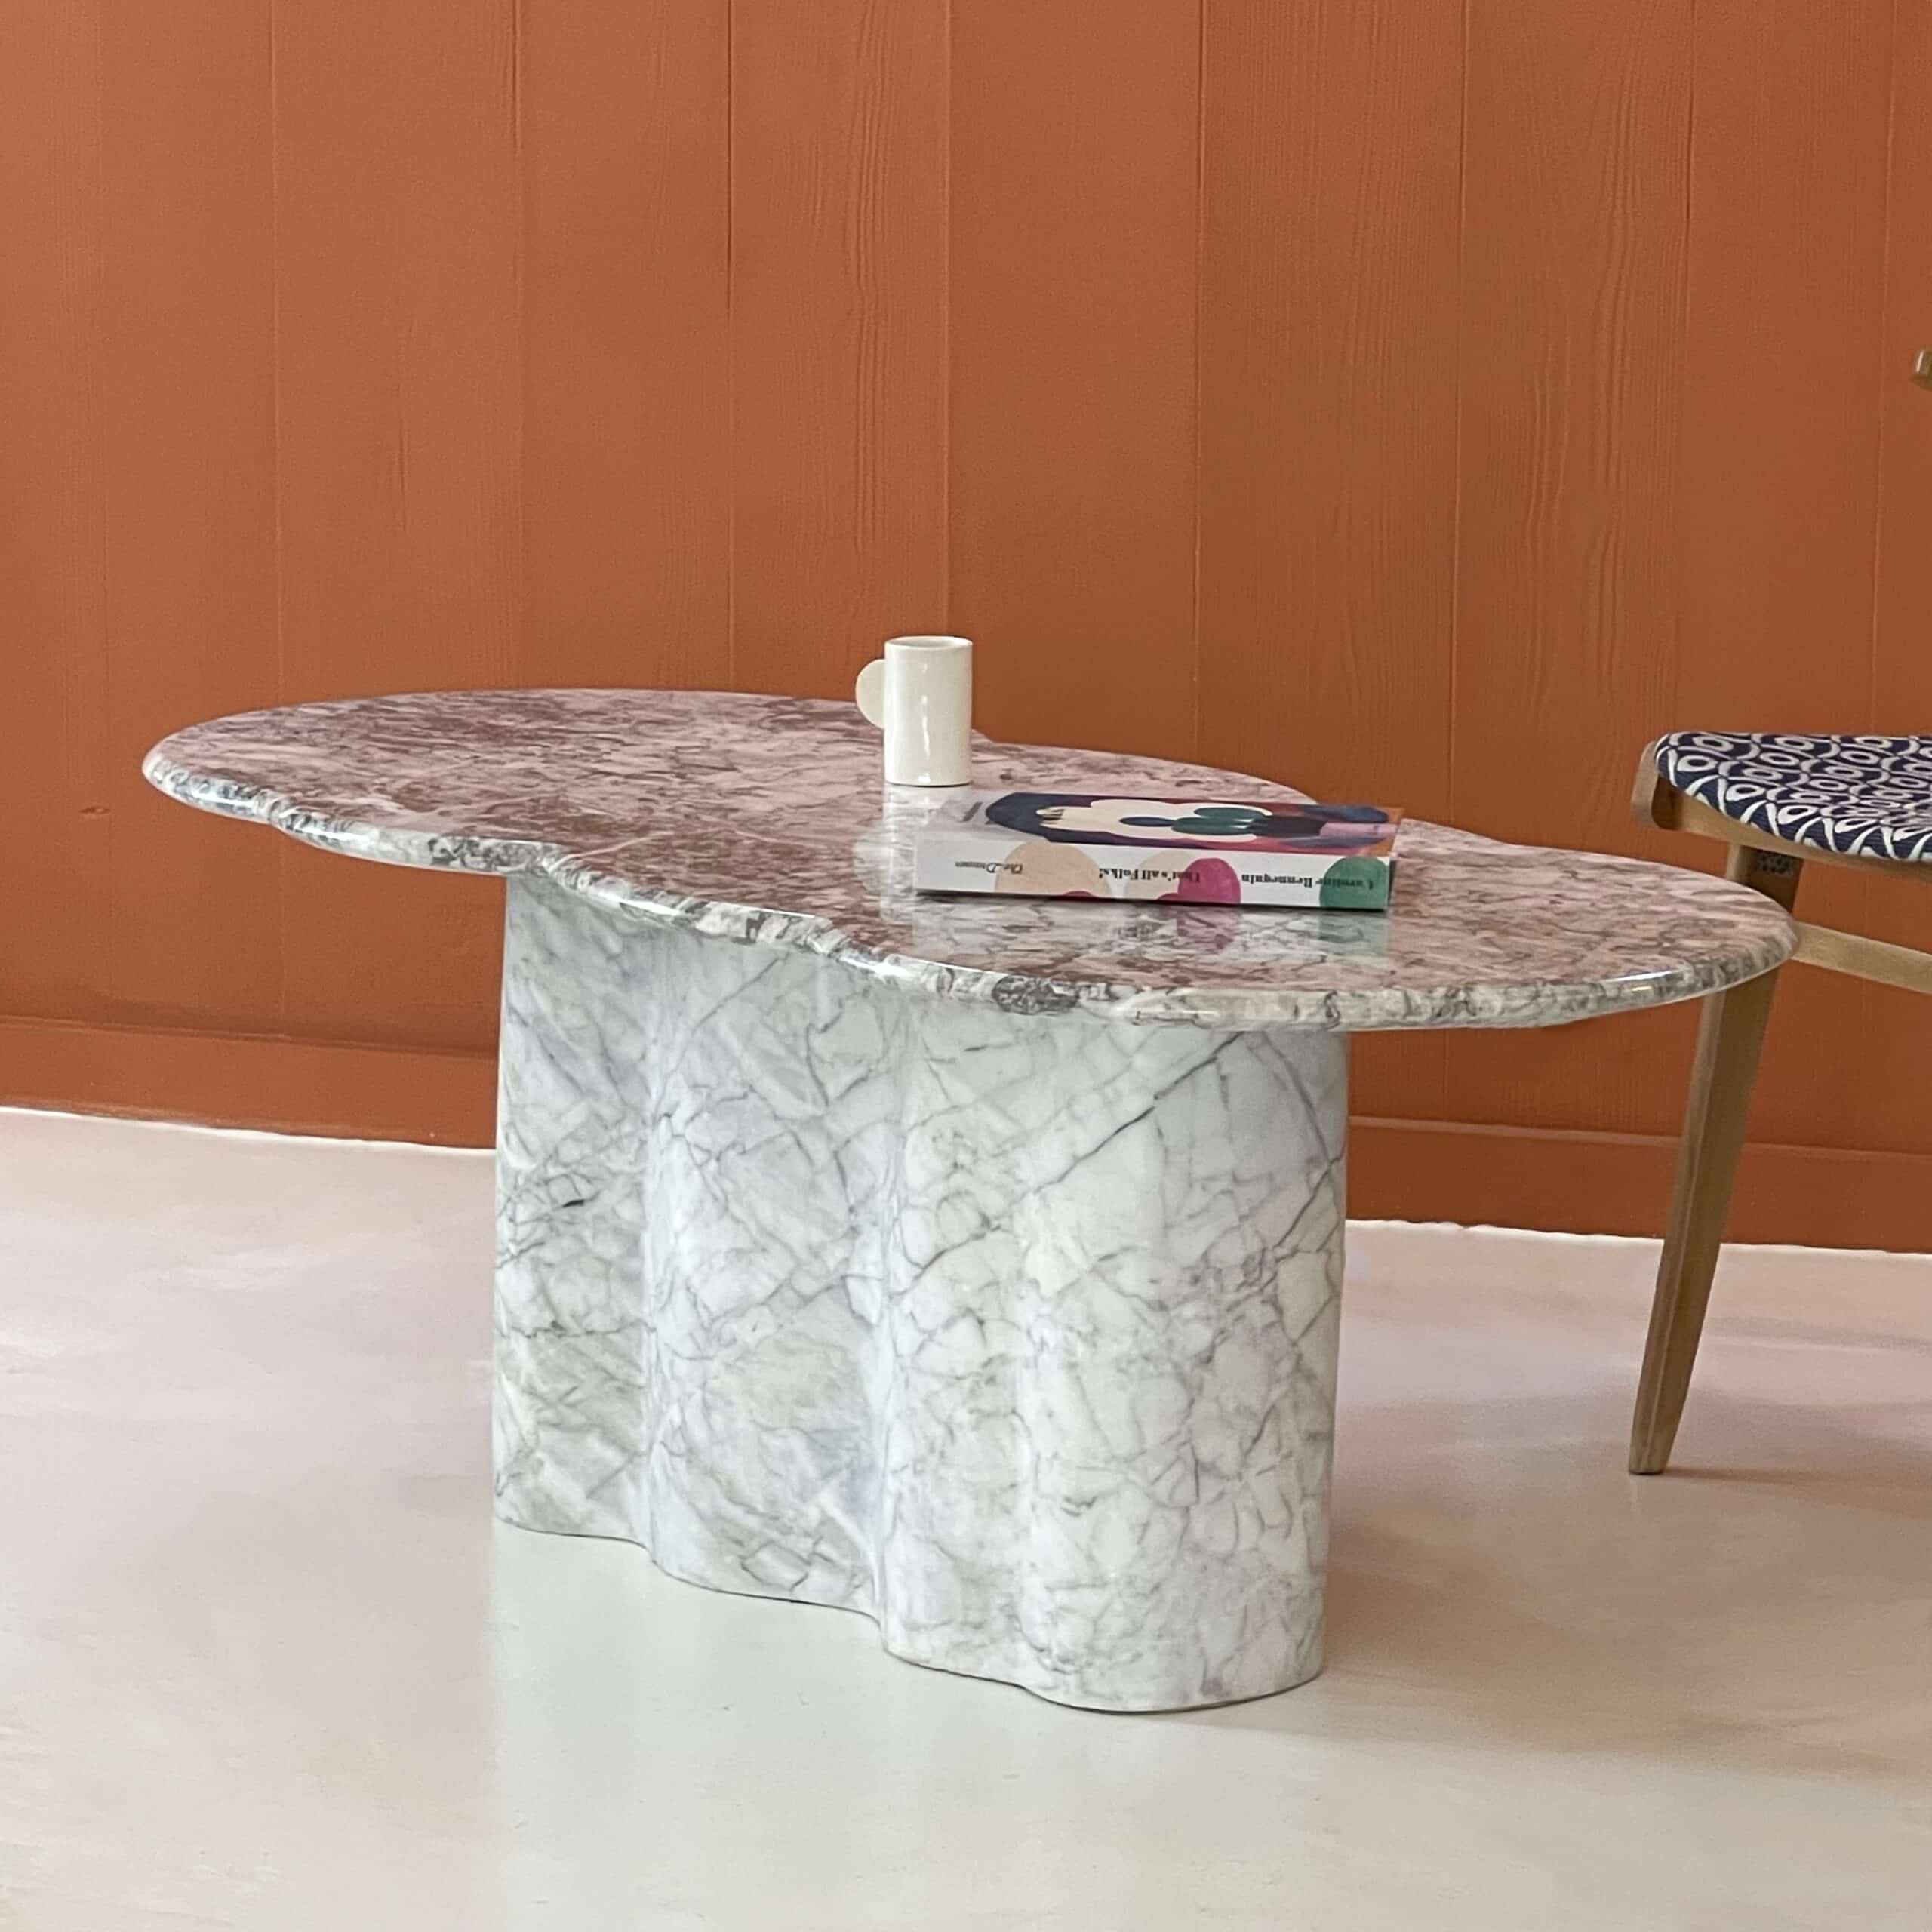 Découvrez la table basse en marbre massif de la nouvelle gamme Haute Couture que Antoine Jourdan développe.